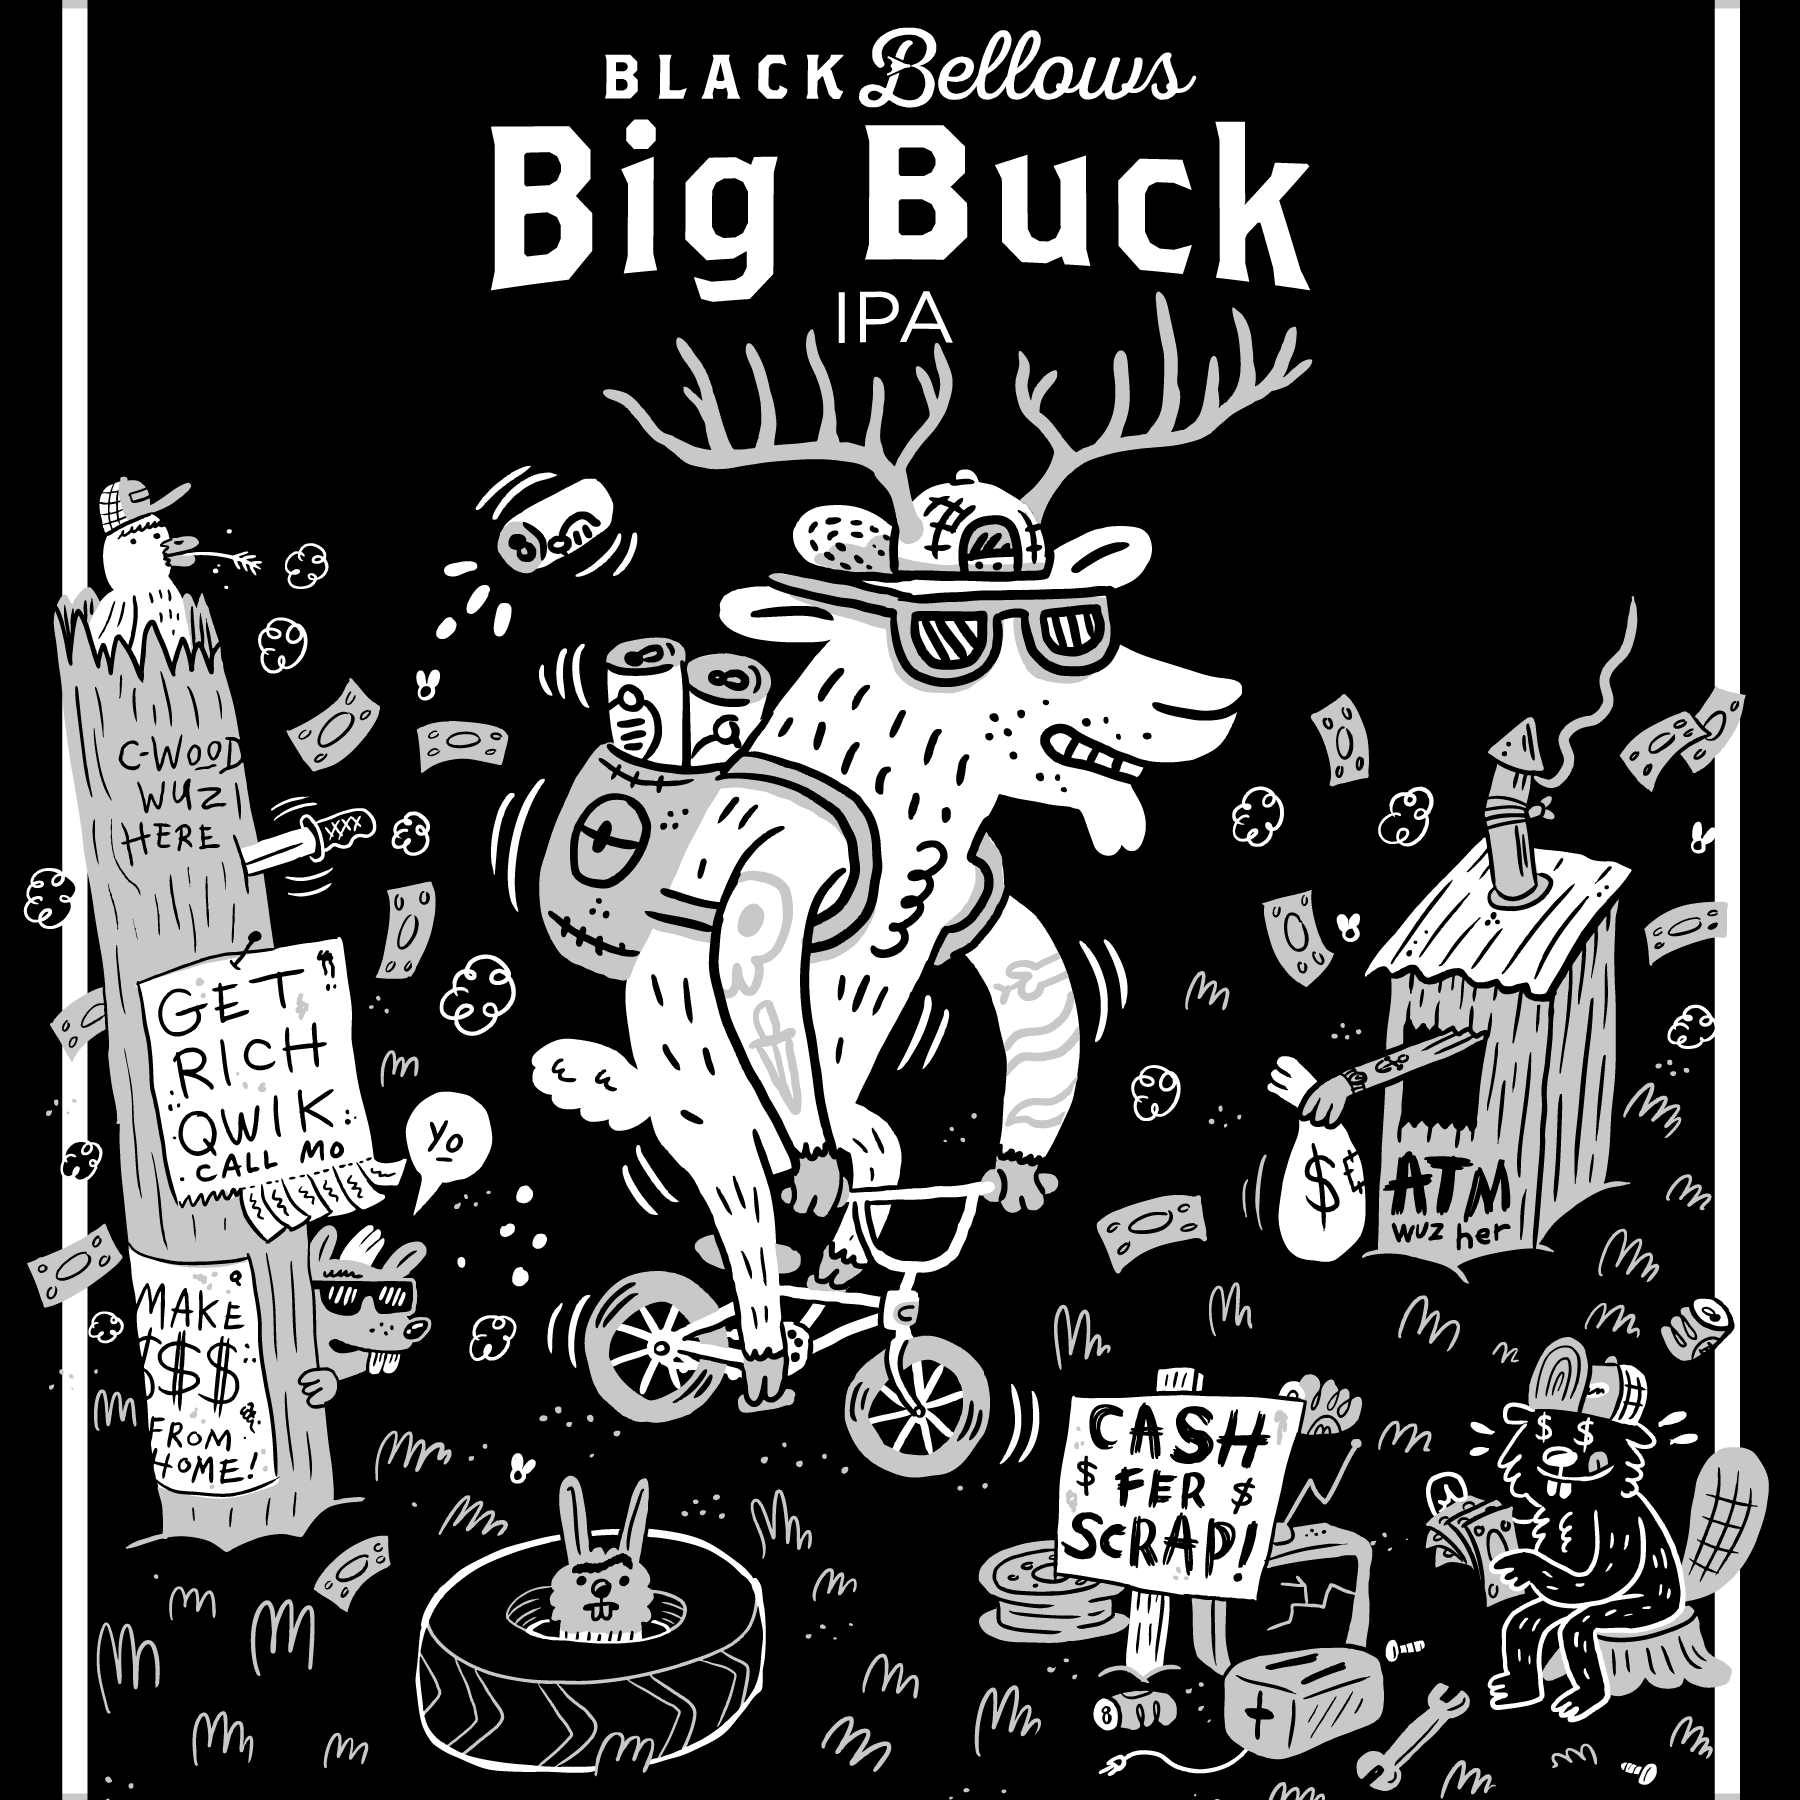 Big Buck IPA